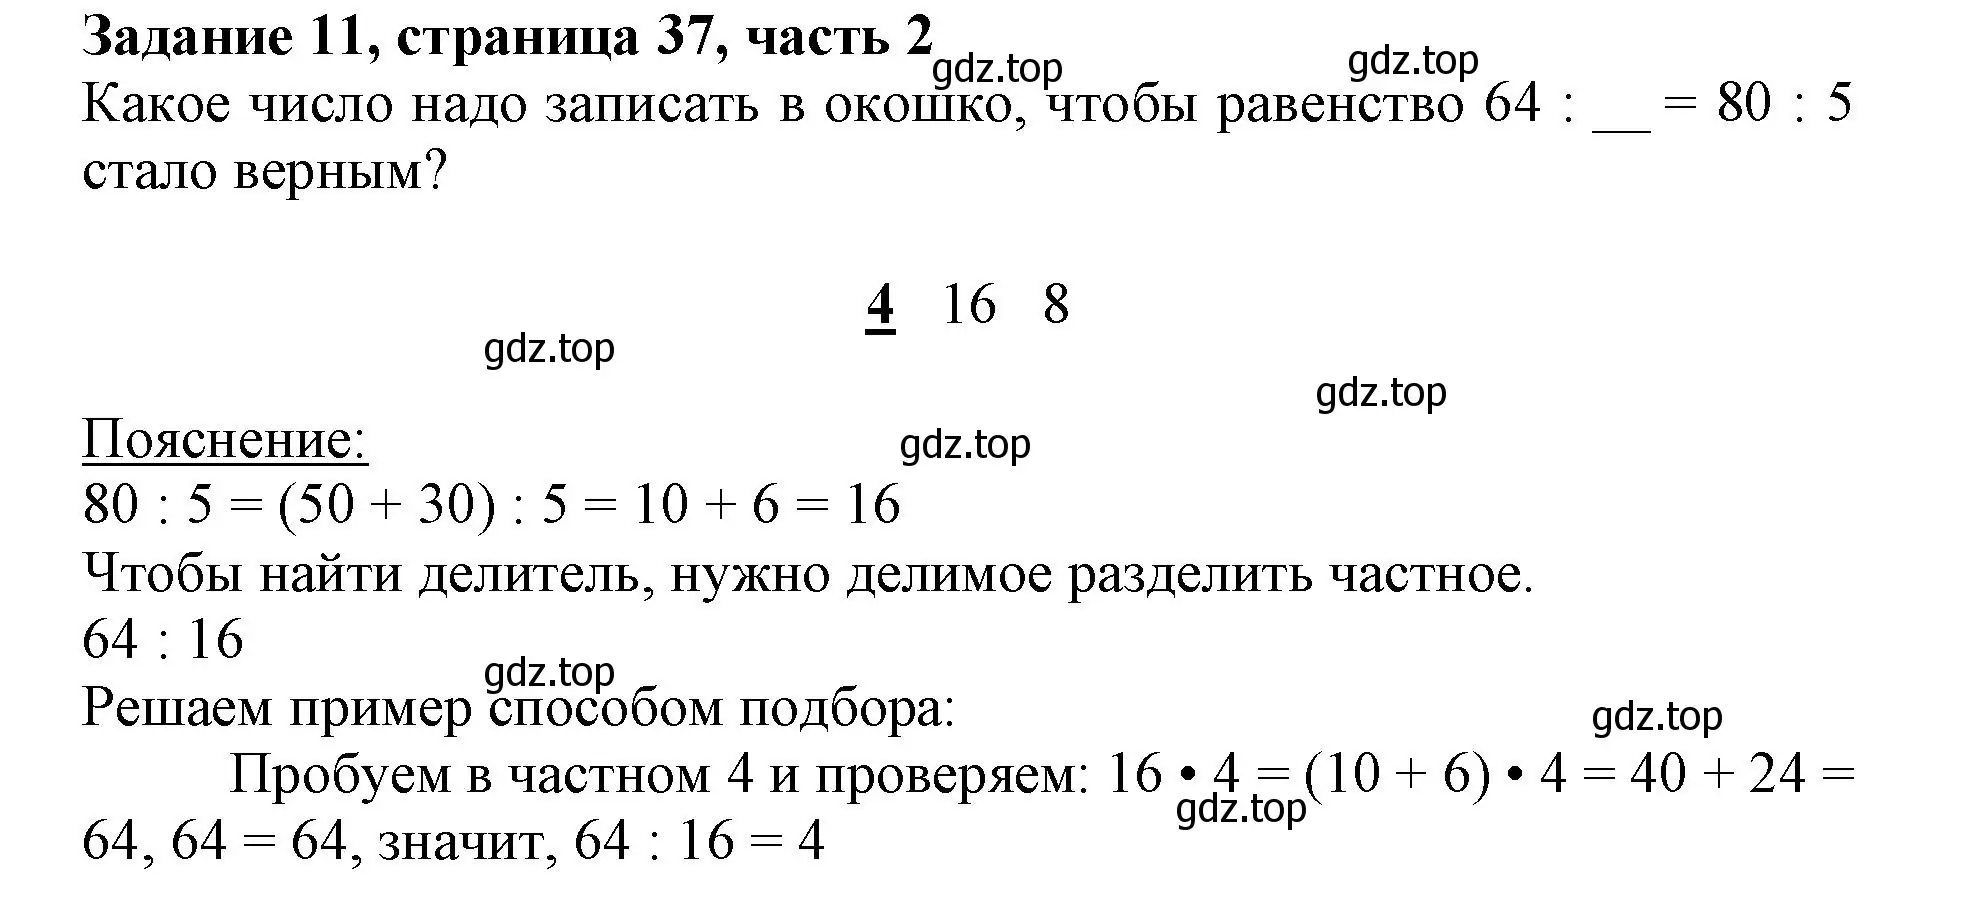 Решение номер 11 (страница 37) гдз по математике 3 класс Моро, Бантова, учебник 2 часть